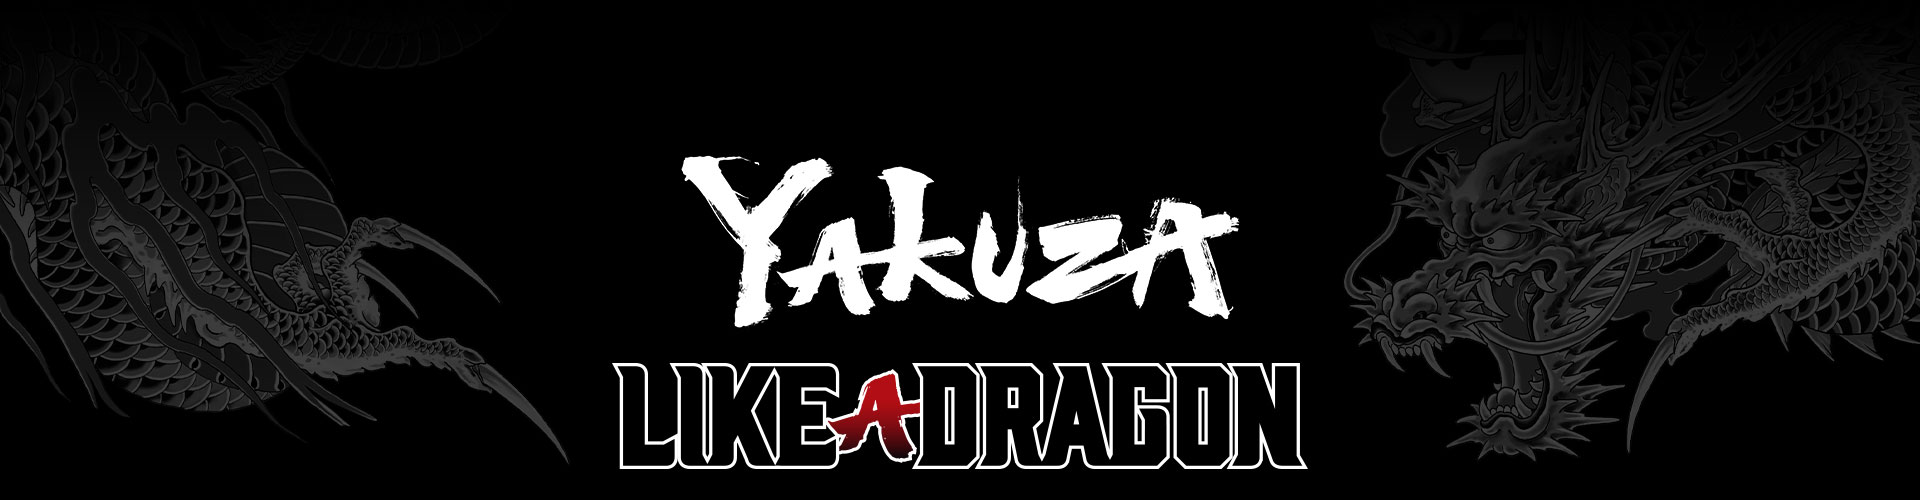 Yakuza Like a Dragon 系列標誌與別具風格的灰龍刺青圖案背景。